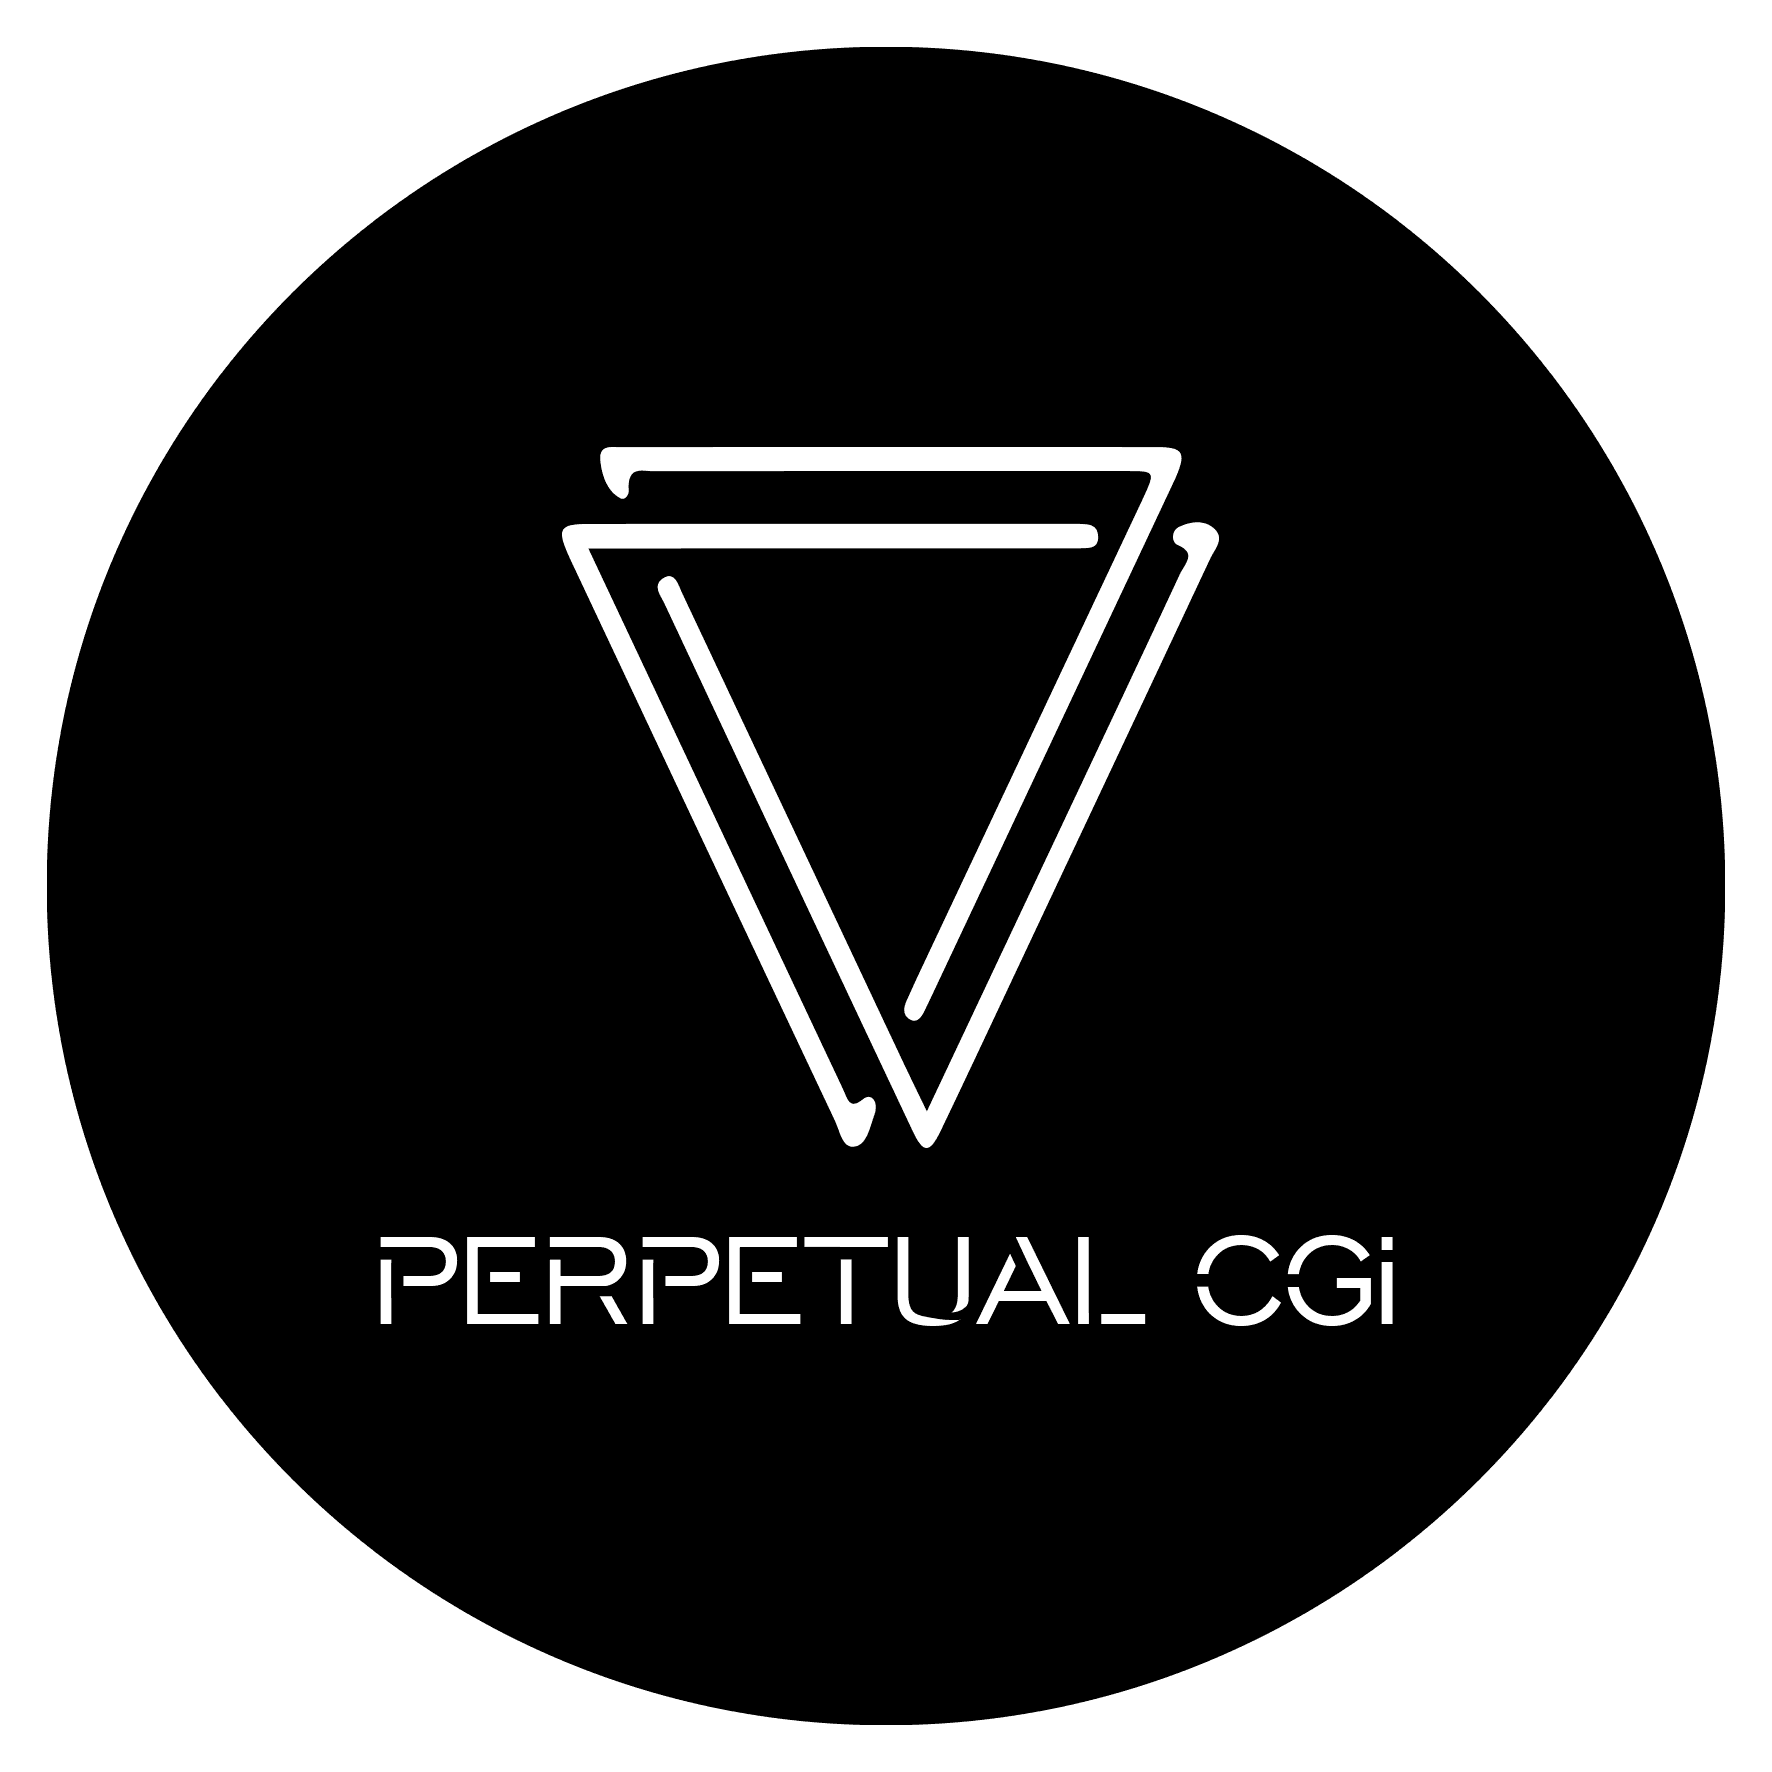 Perpetual_cgi